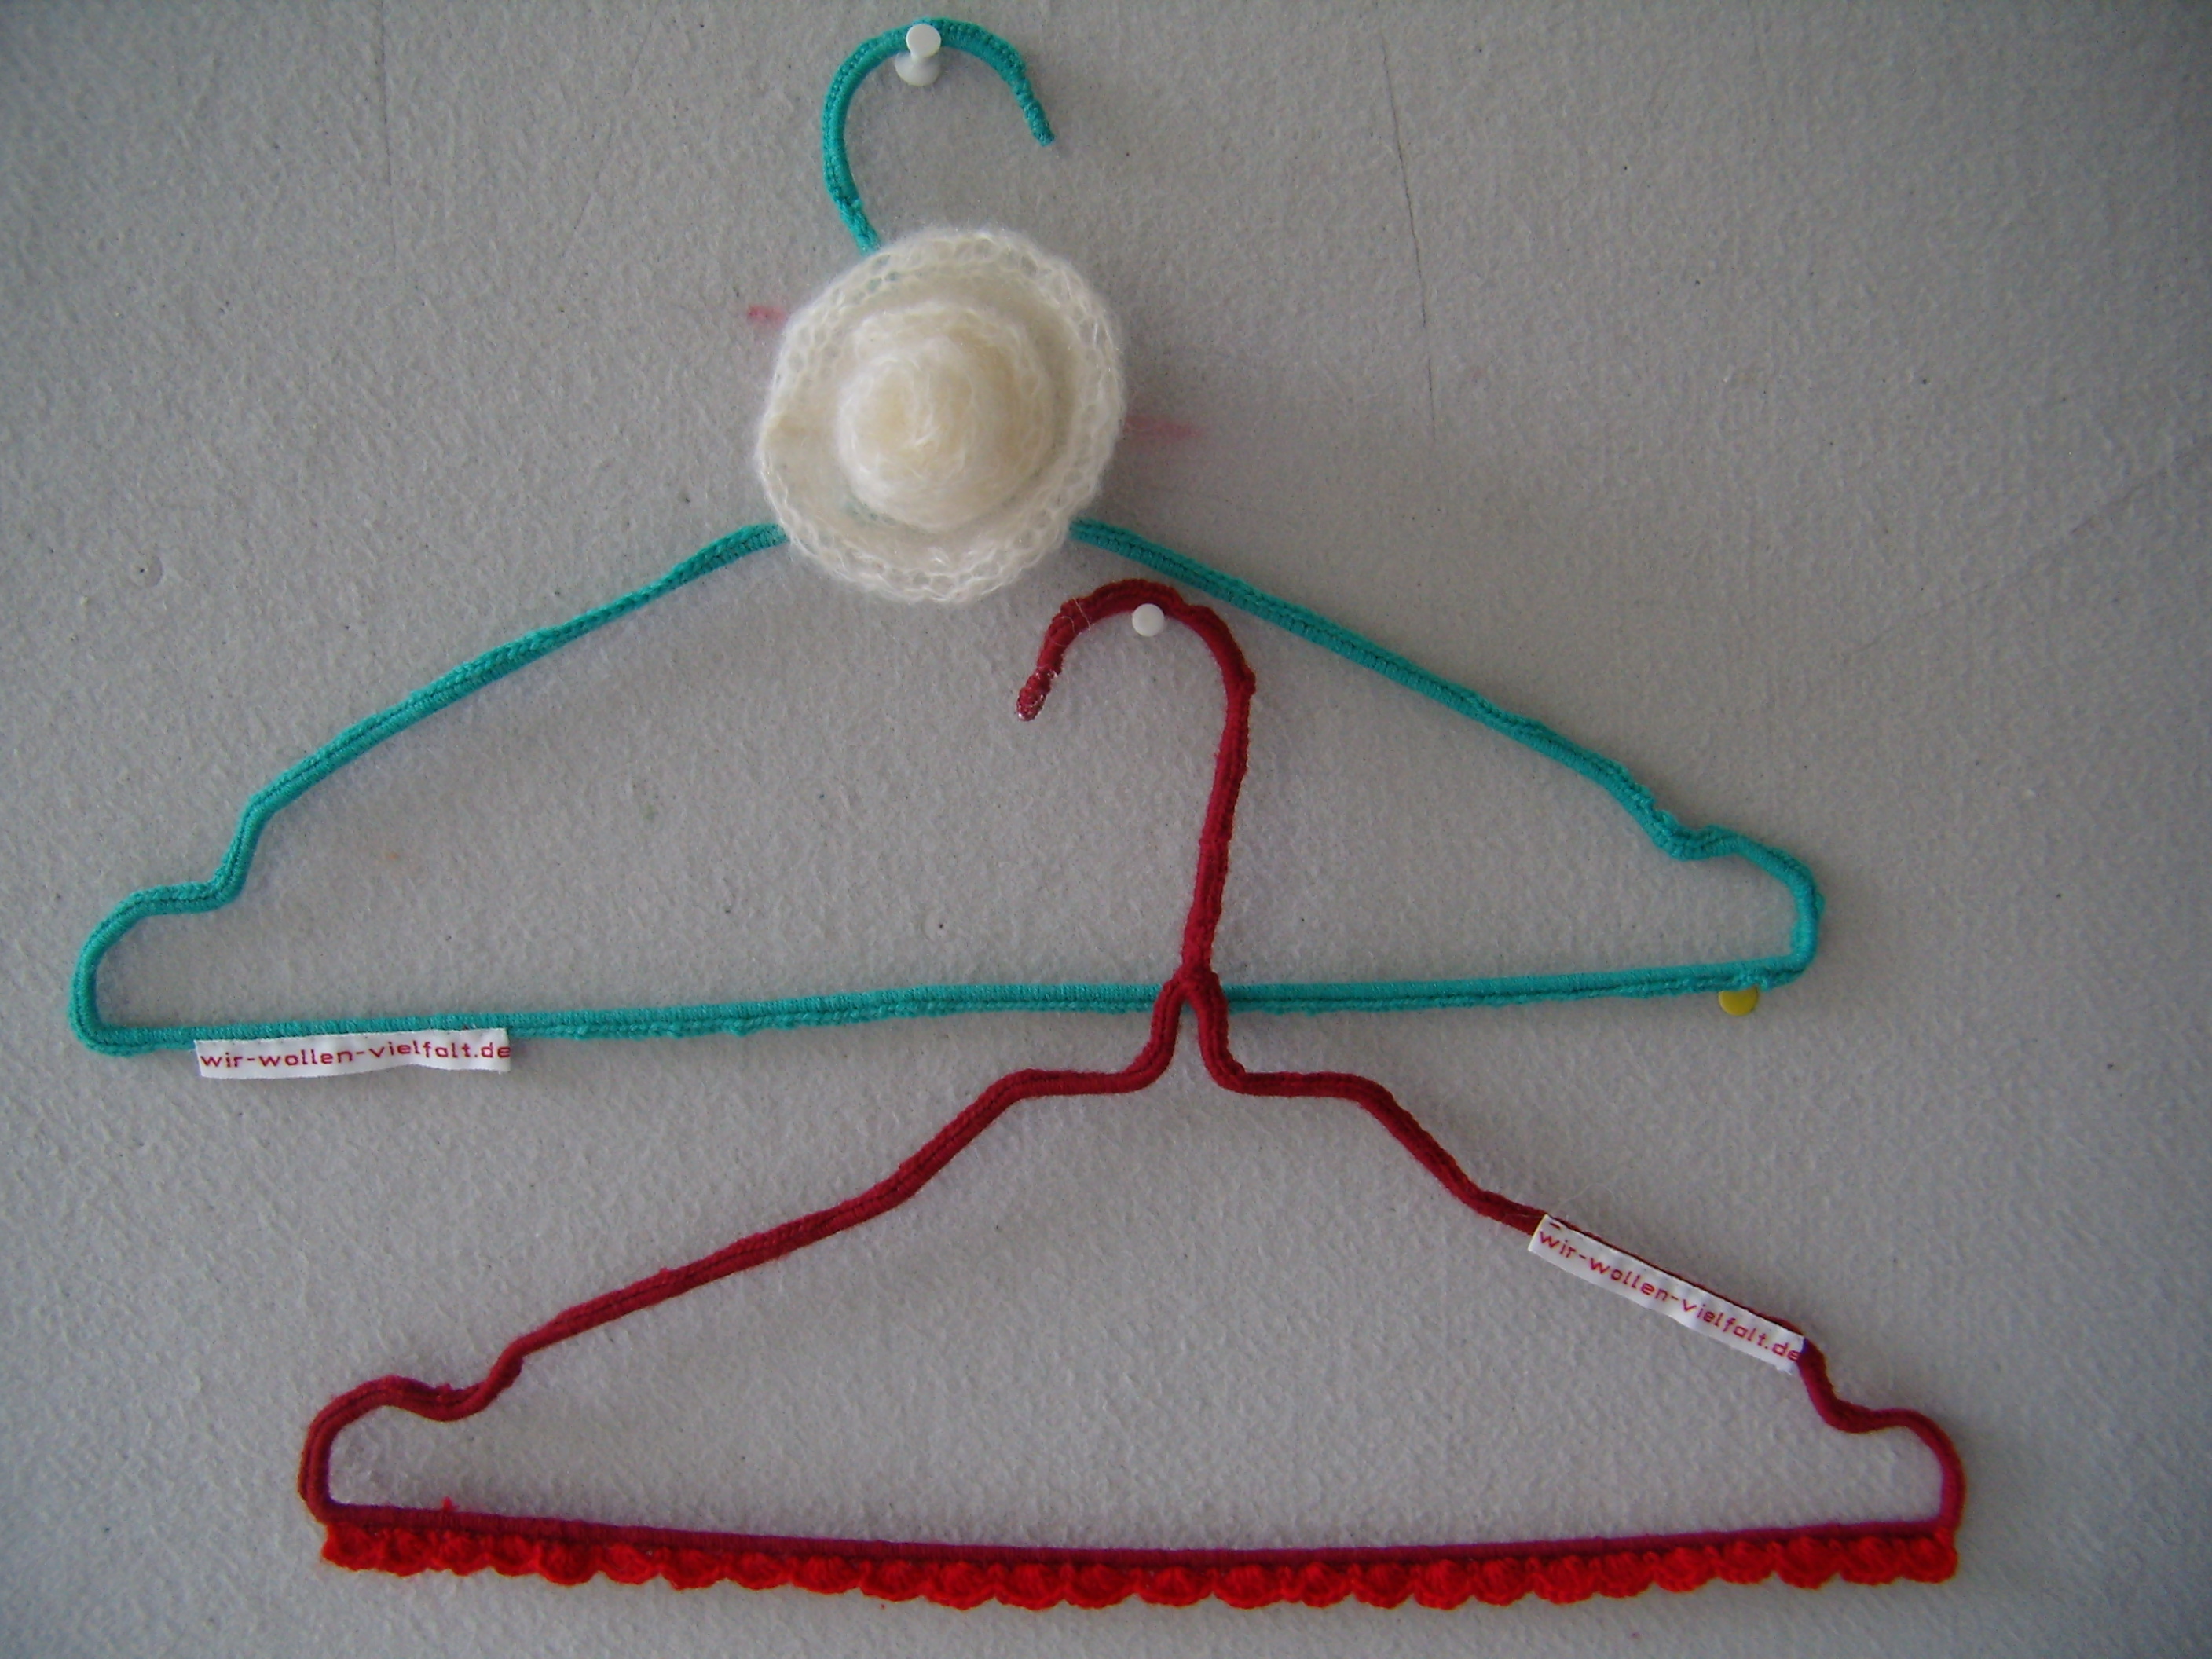 Zwei Draht-Kleiderbügel mit der Aufschift "wir-wollen-vielfalt.de", der eine rot, der andere grün umhäkelt, hängen an einer hellgrauen Pinwand.